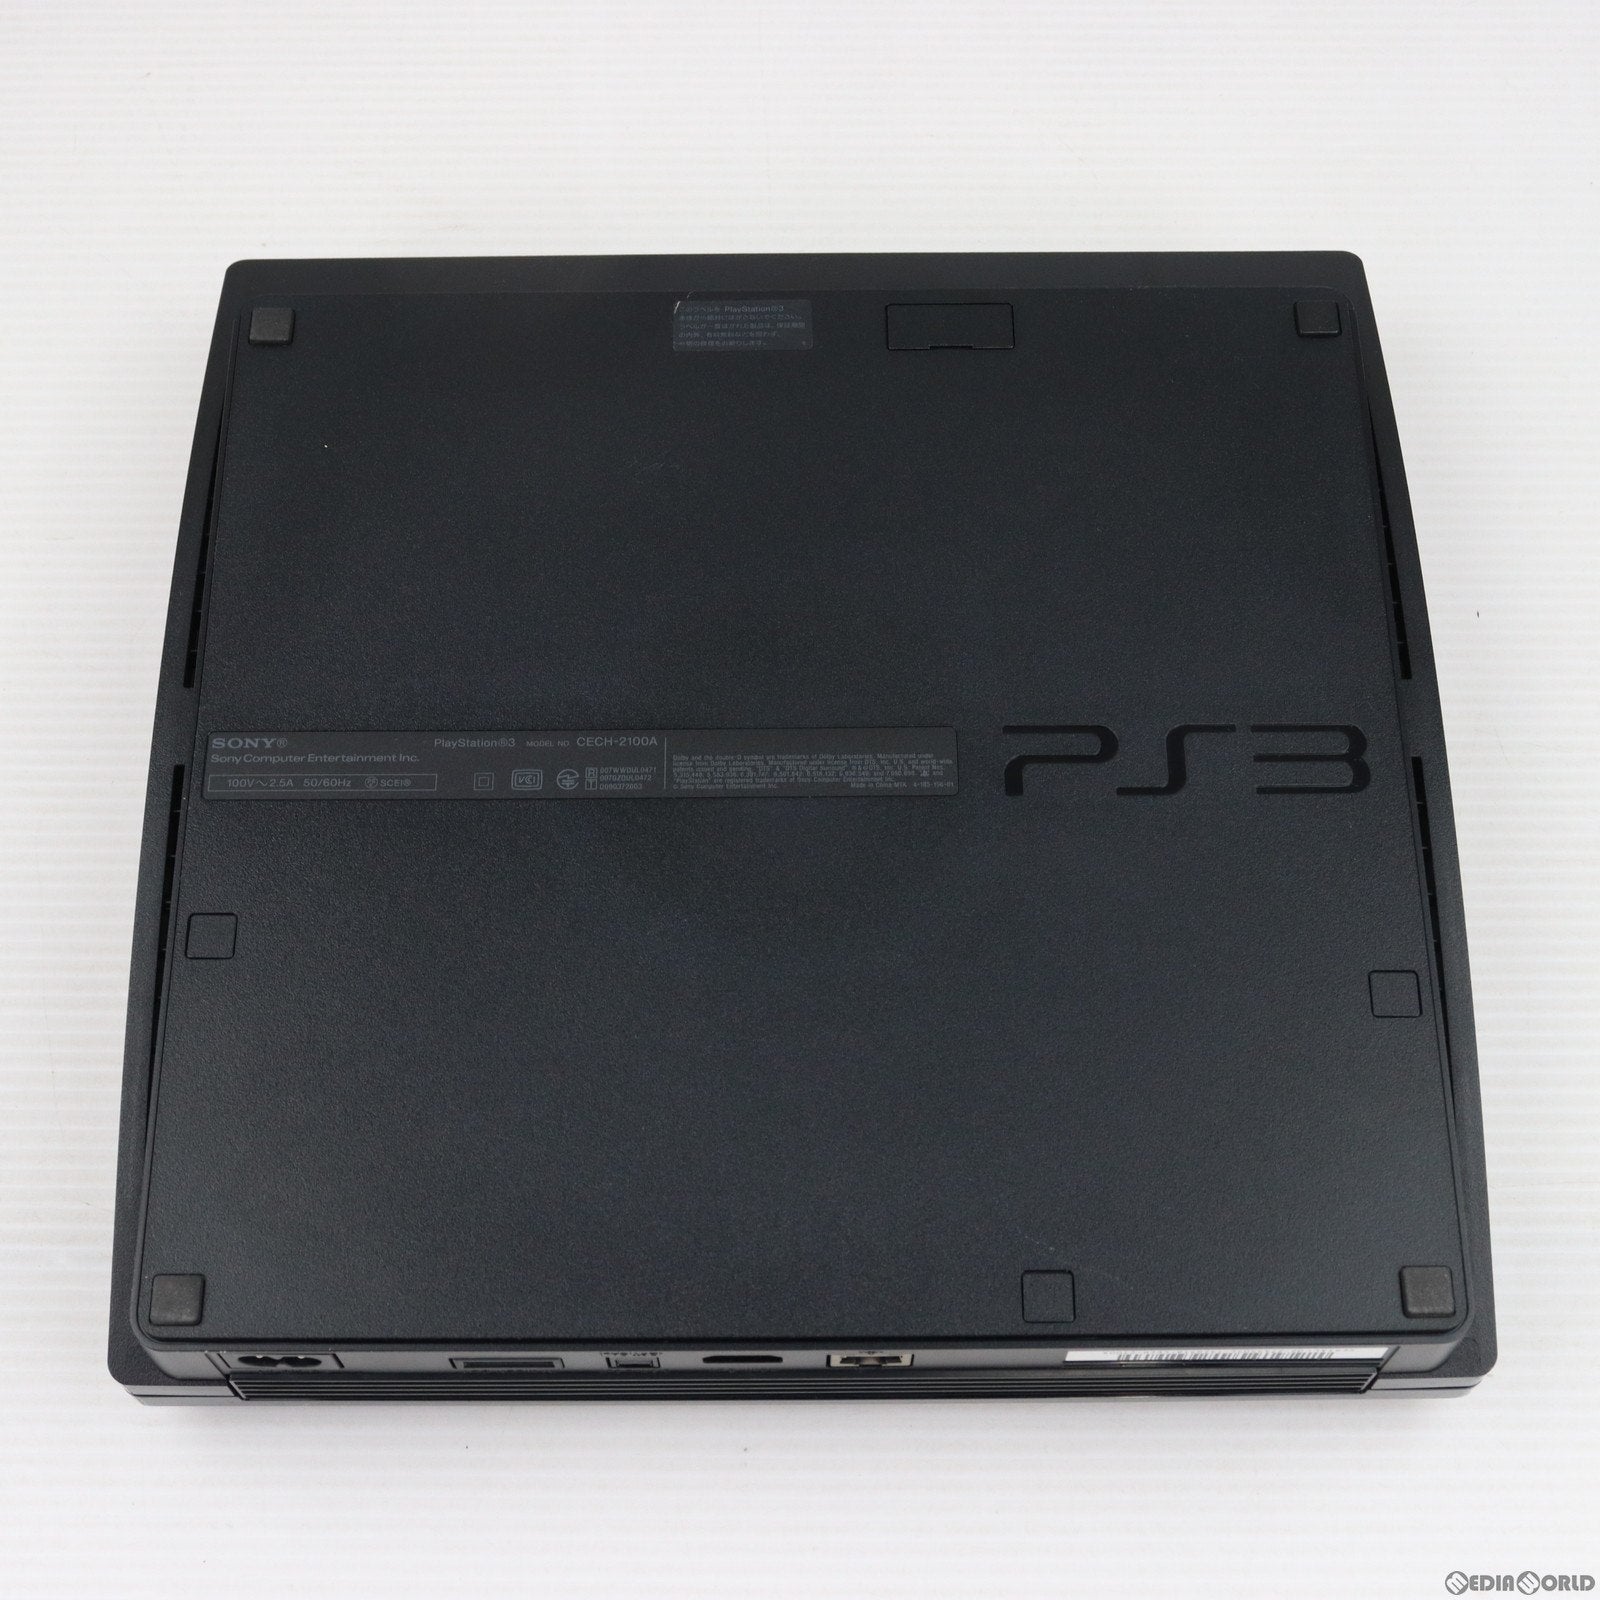 【中古即納】[本体][PS3]プレイステーション3 PlayStation3 チャコール・ブラック HDD120GB(CECH-2100A)(20100319)